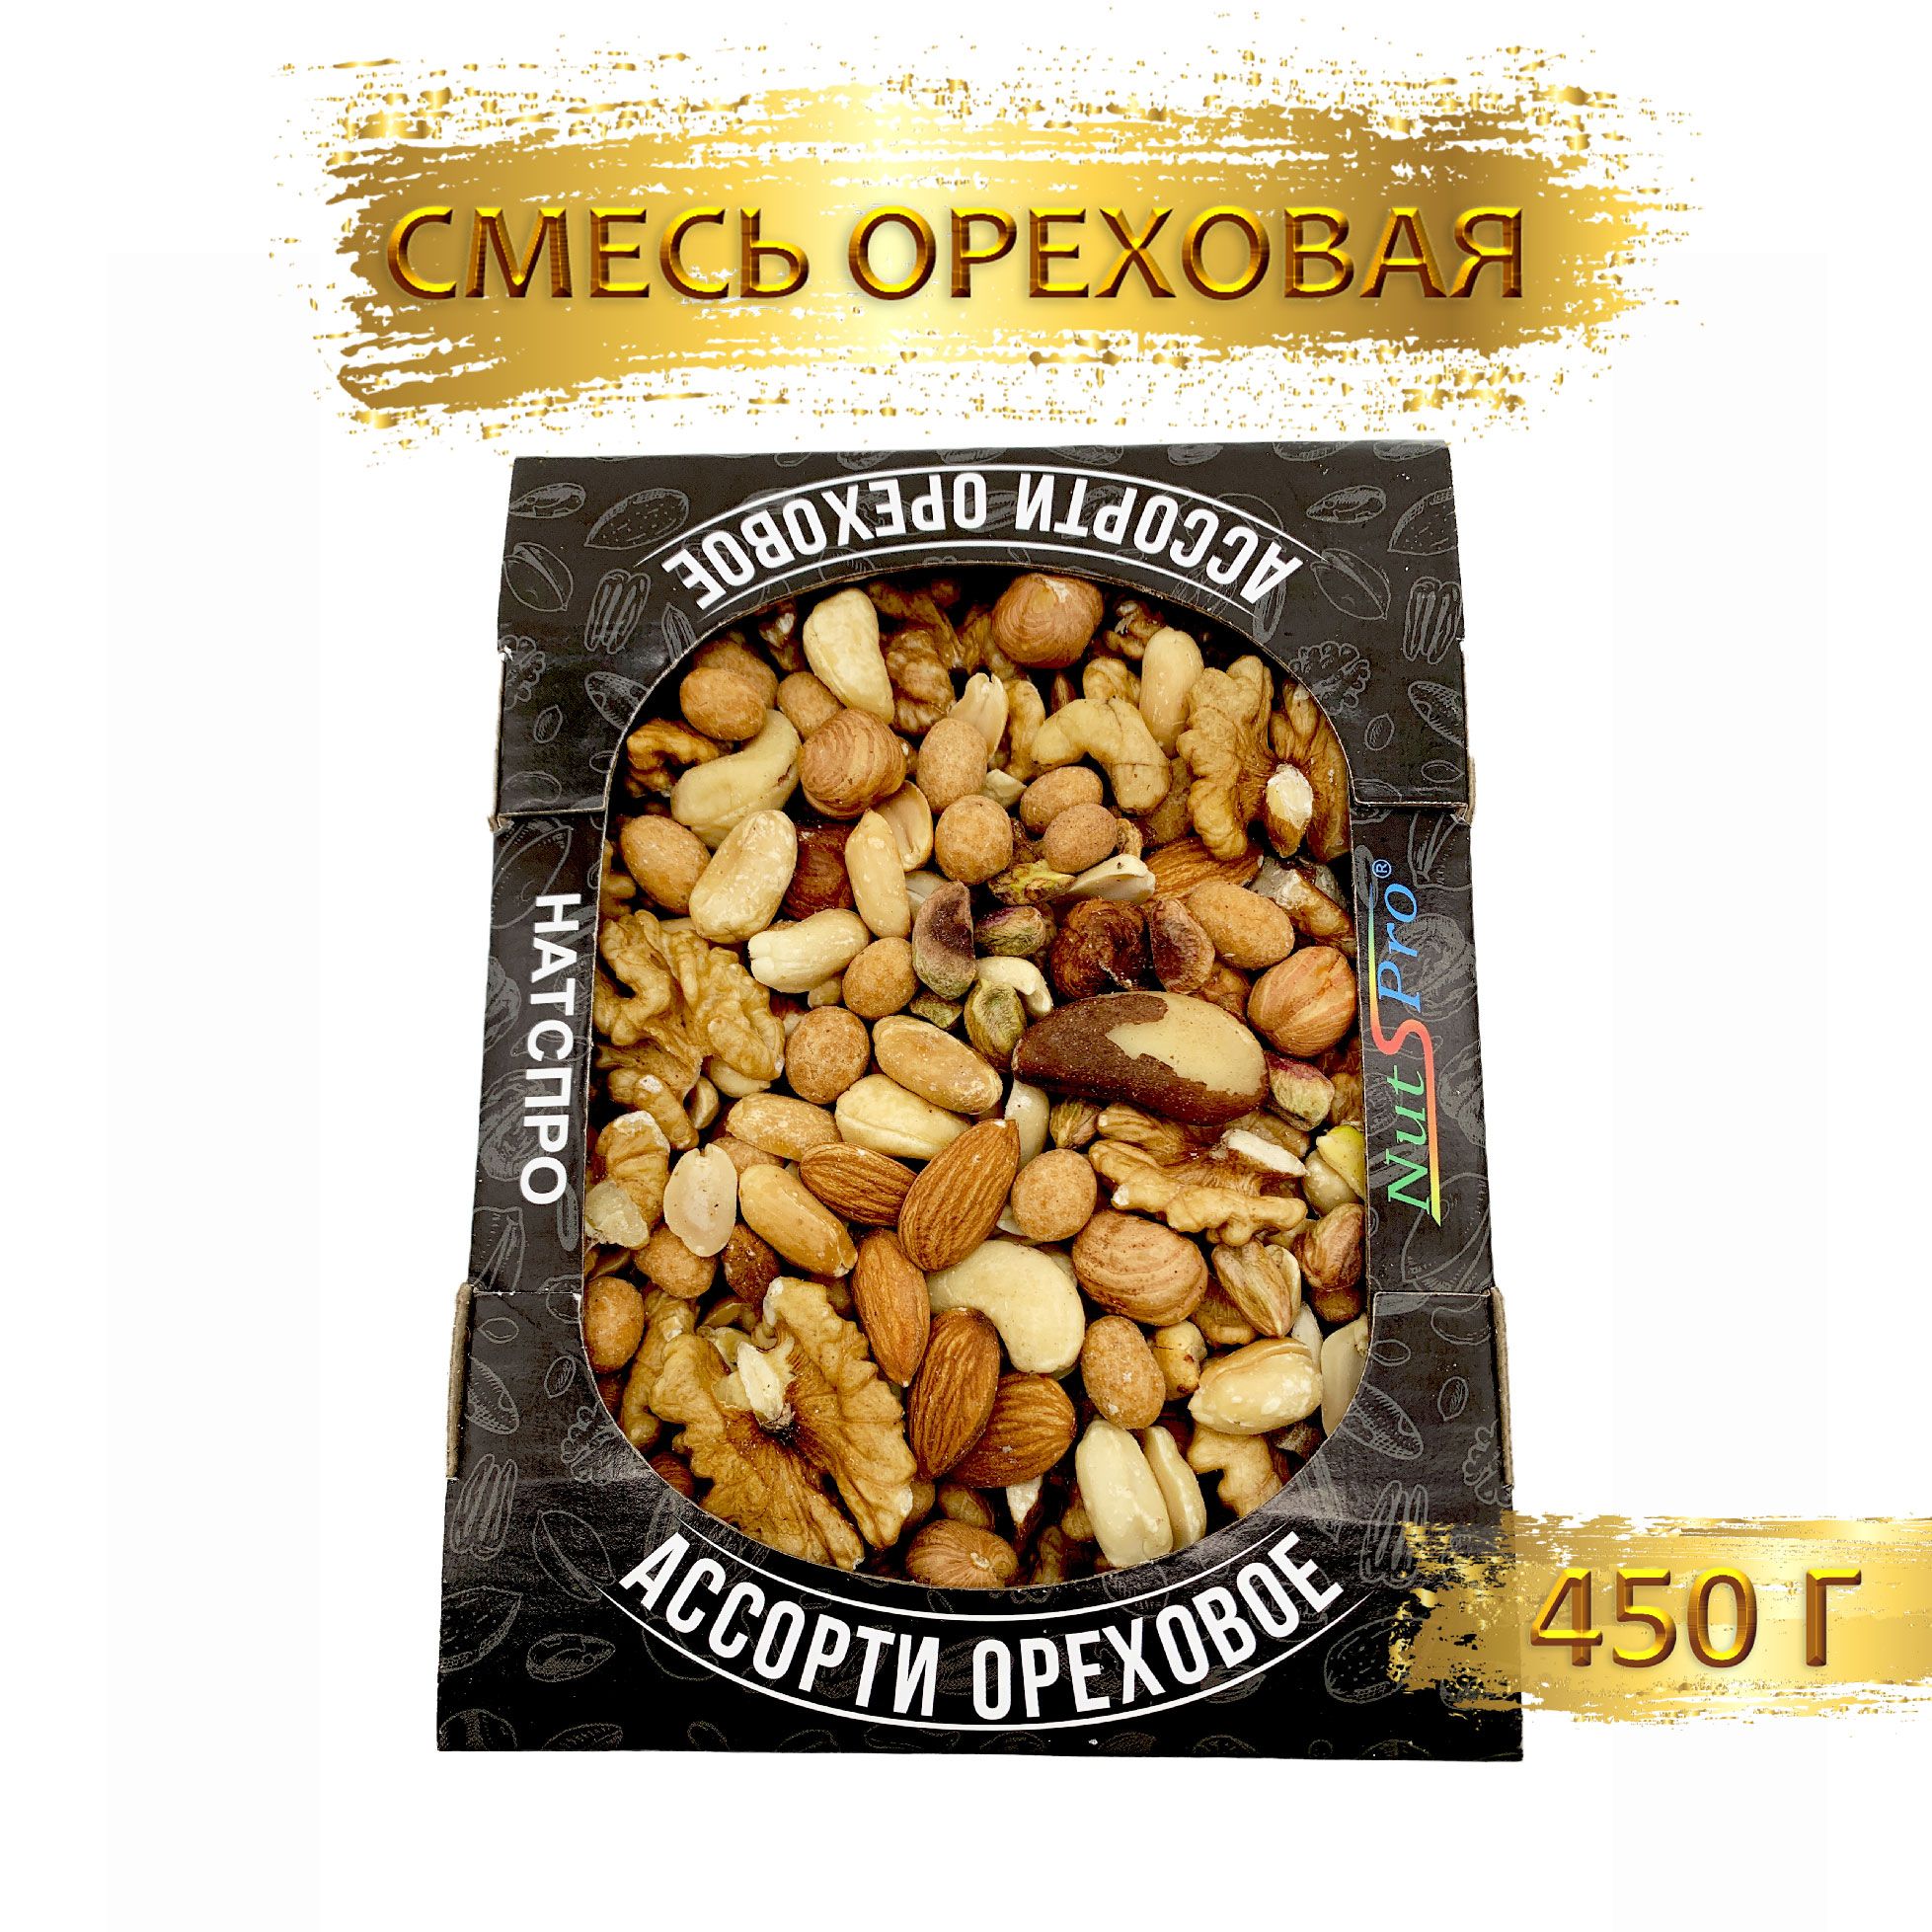 Смесь ореховая "NutsPro" 450 гр (1шт по 450 гр) — купить в интернет-магазине OZON с быстрой доставкой